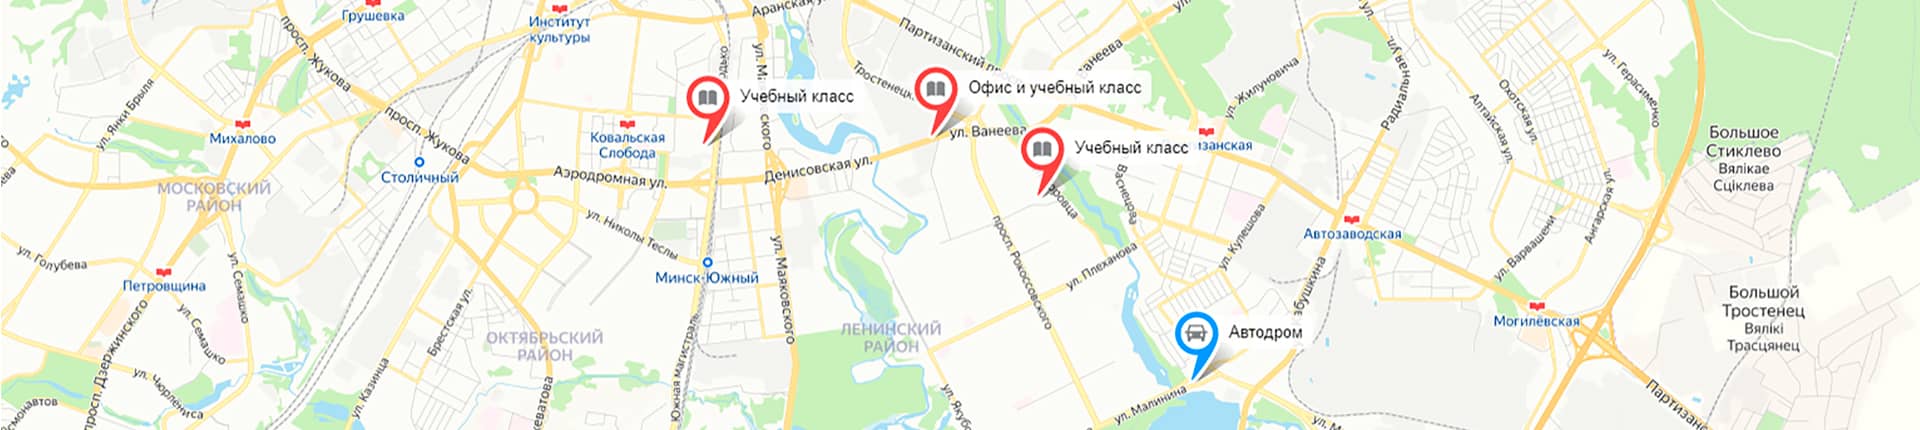 Офис, учебные классы, автодром автошколы Город Дорог на карте Минска